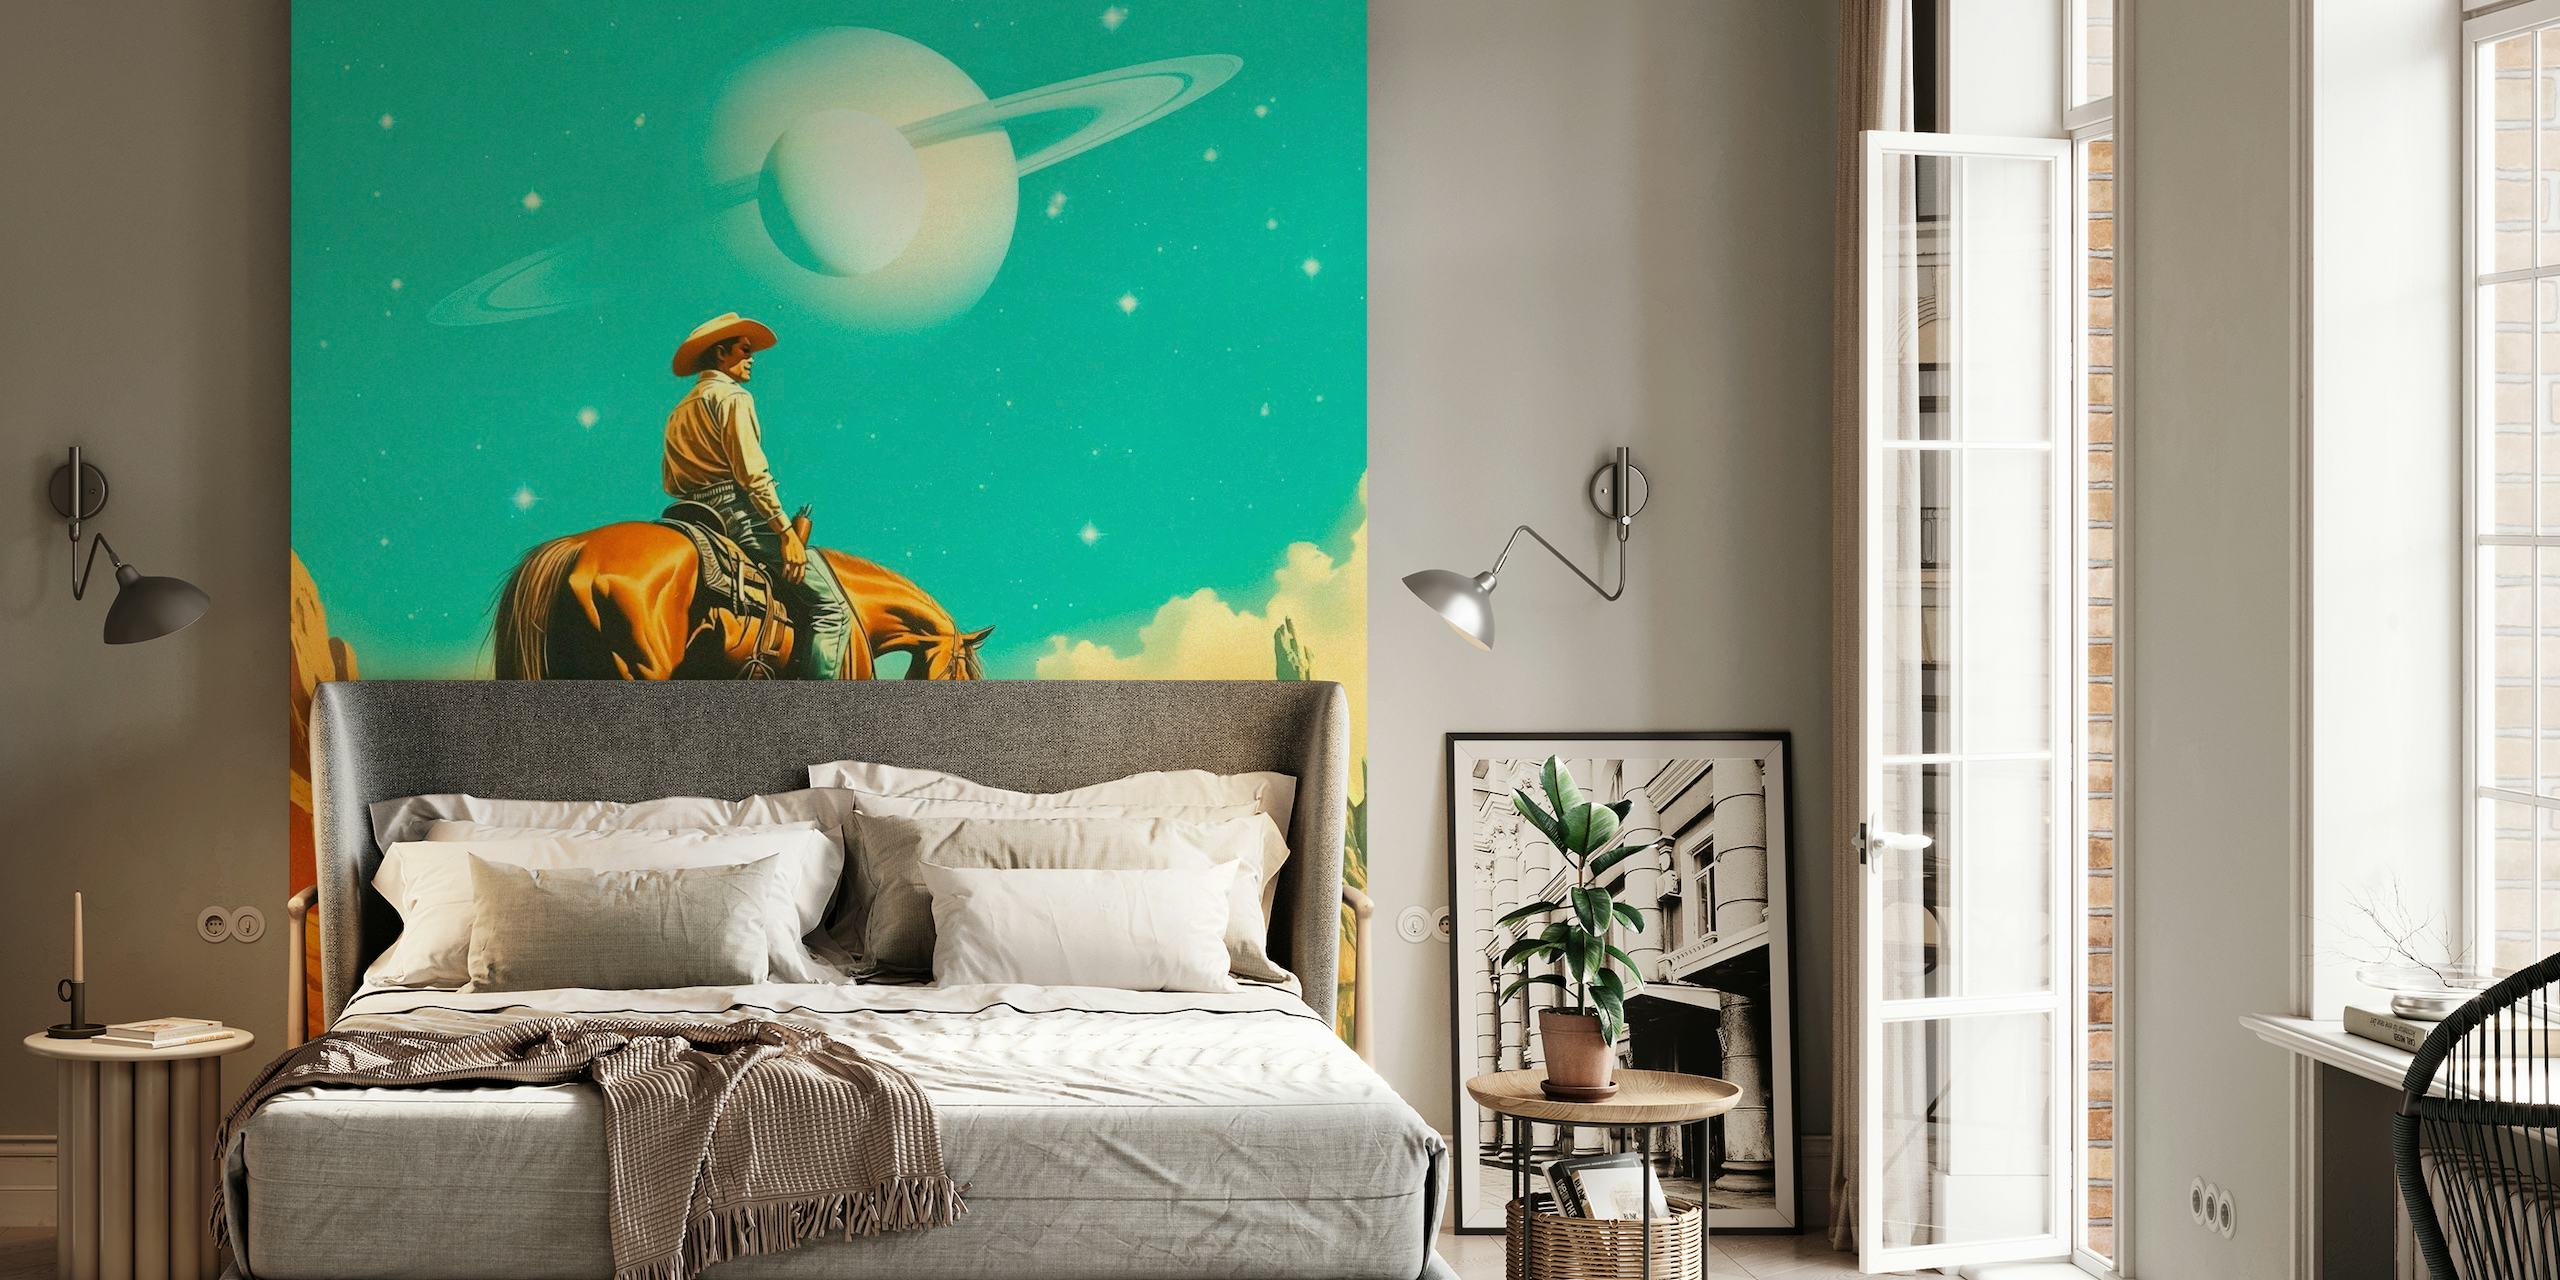 A Western Astronaut wallpaper